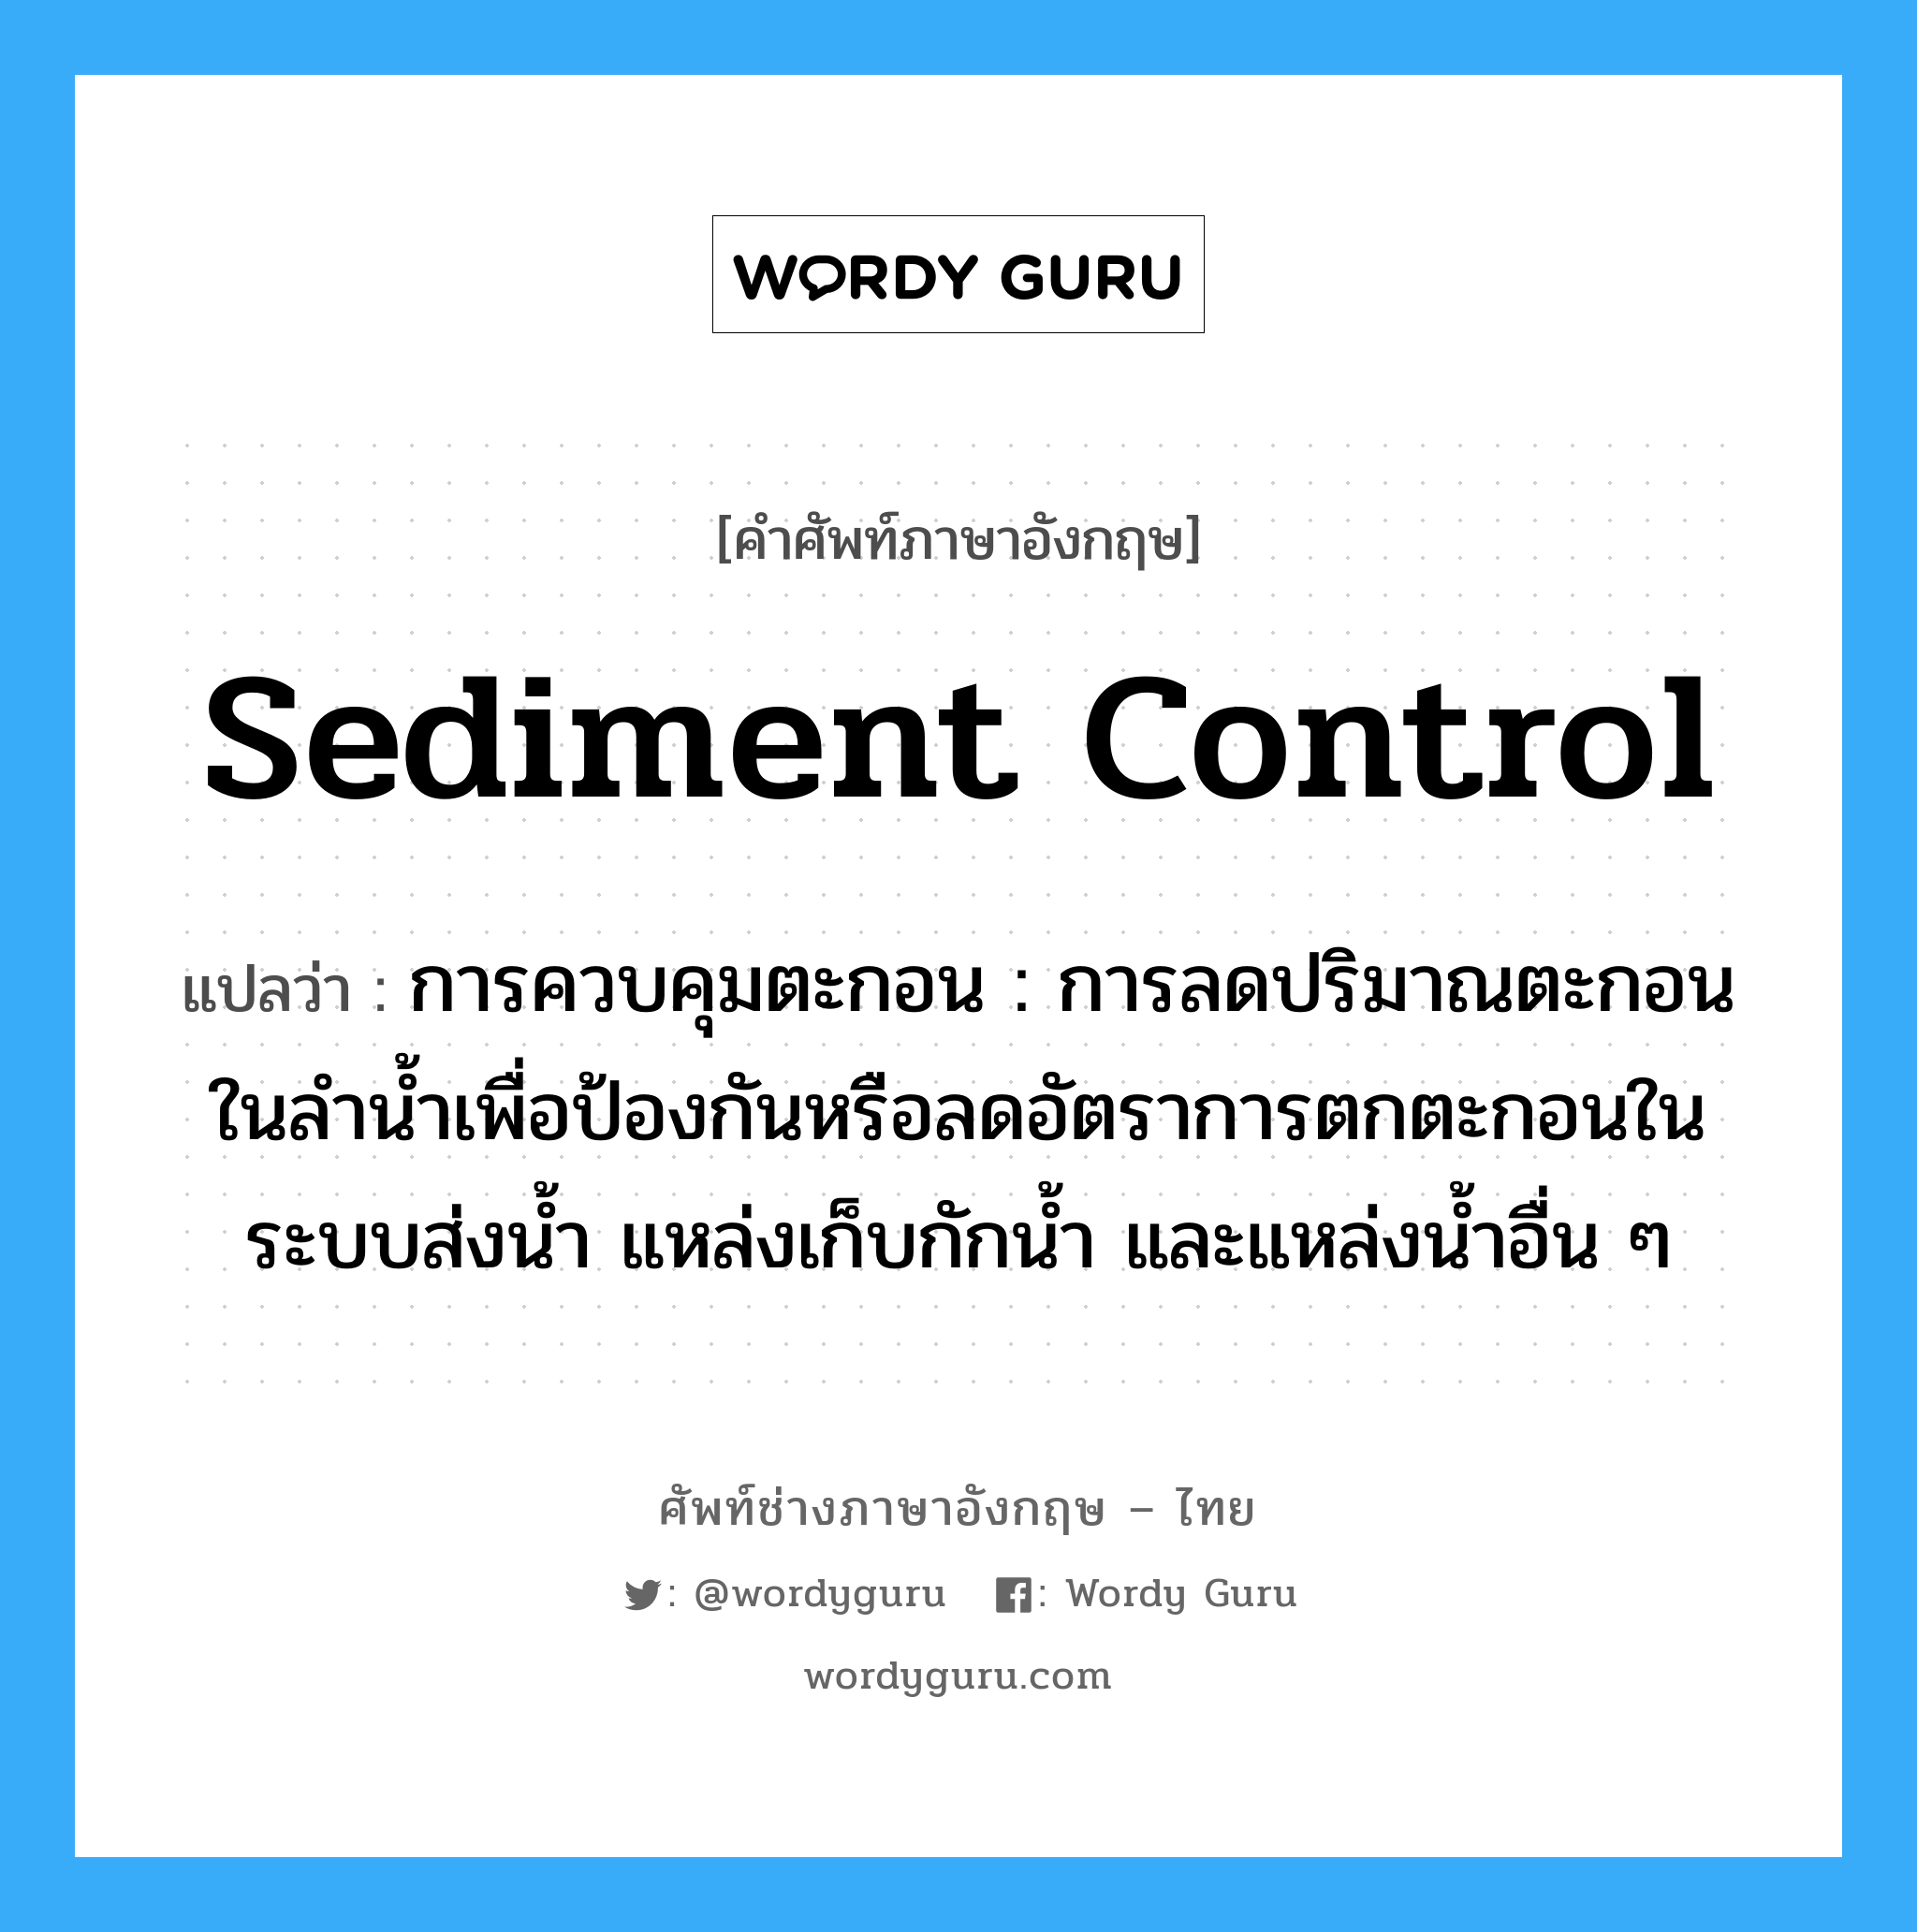 sediment control แปลว่า?, คำศัพท์ช่างภาษาอังกฤษ - ไทย sediment control คำศัพท์ภาษาอังกฤษ sediment control แปลว่า การควบคุมตะกอน : การลดปริมาณตะกอนในลำน้ำเพื่อป้องกันหรือลดอัตราการตกตะกอนในระบบส่งน้ำ แหล่งเก็บกักน้ำ และแหล่งน้ำอื่น ๆ